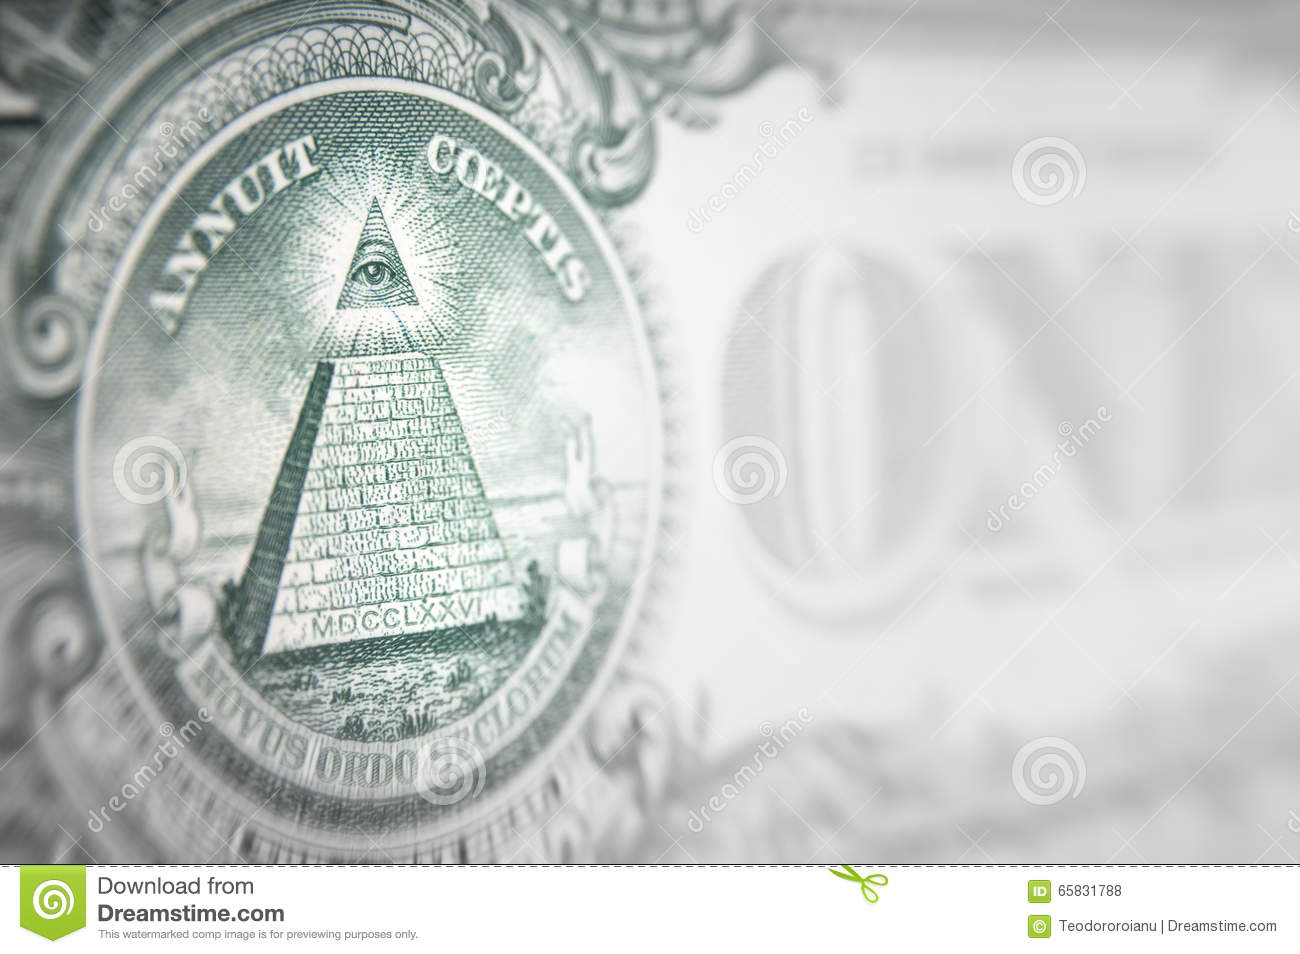 La conspiración del dinero| El secreto más sucio